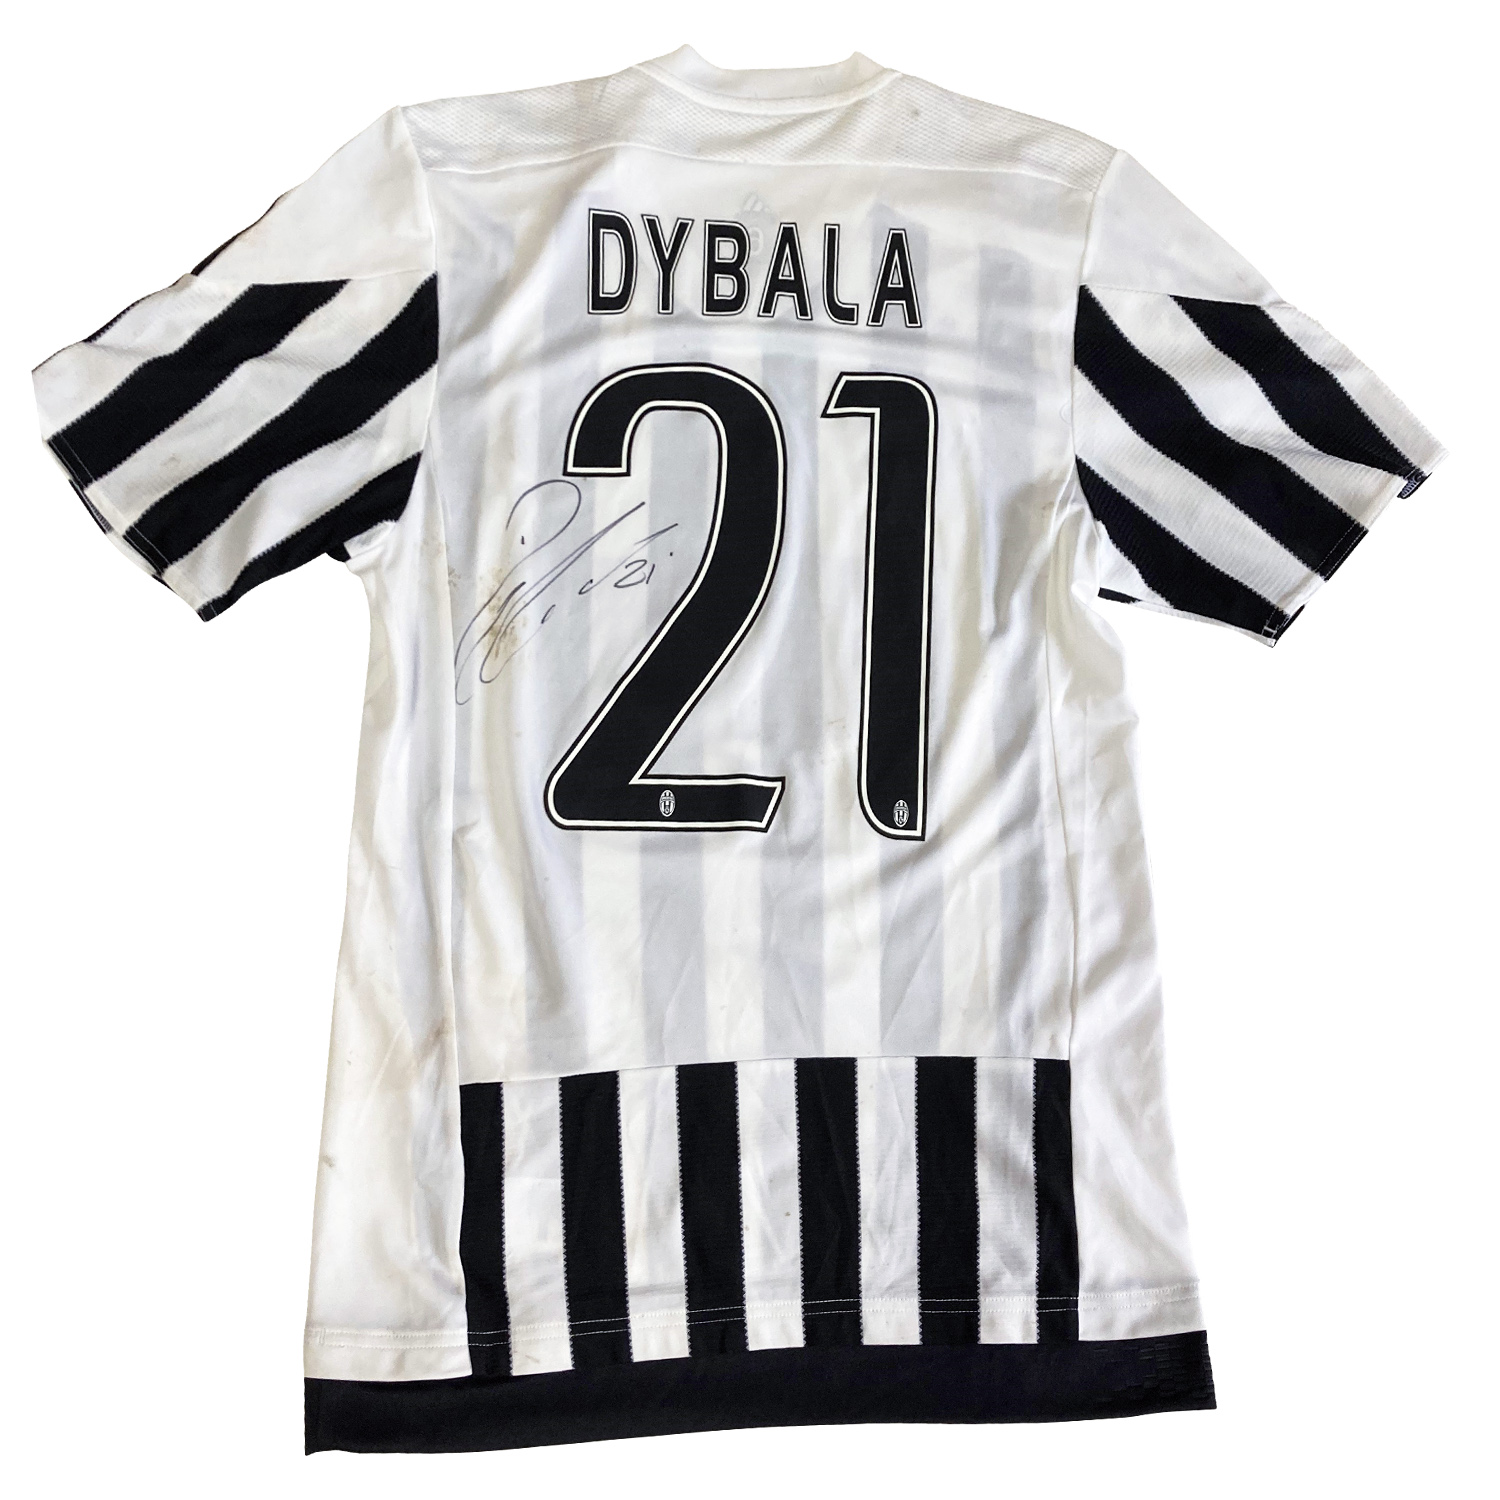 パウロ・ディバラ直筆サイン入り実使用ユベントス2015-2016ホームユニフォーム / Dybala signed match worn  Juventus 2015-2016 home shirt